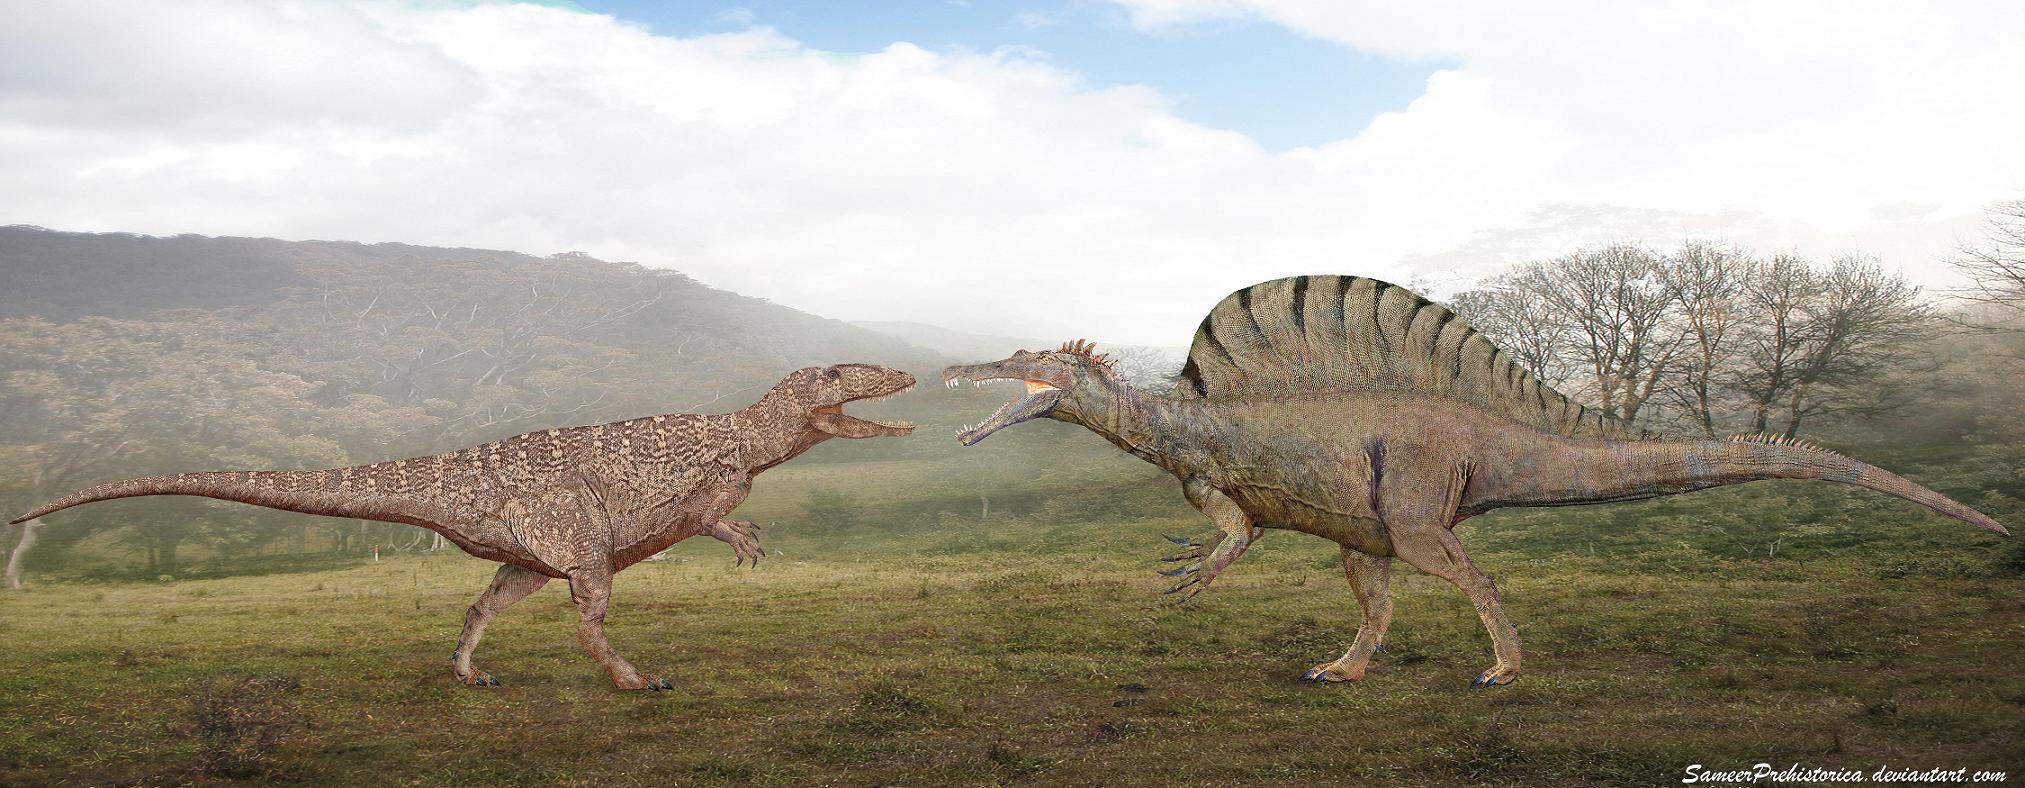 http://fc01.deviantart.net/fs70/f/2013/158/0/9/carcharodontosaurus_vs_spinosaurus_by_sameerprehistorica-d660i88.jpg